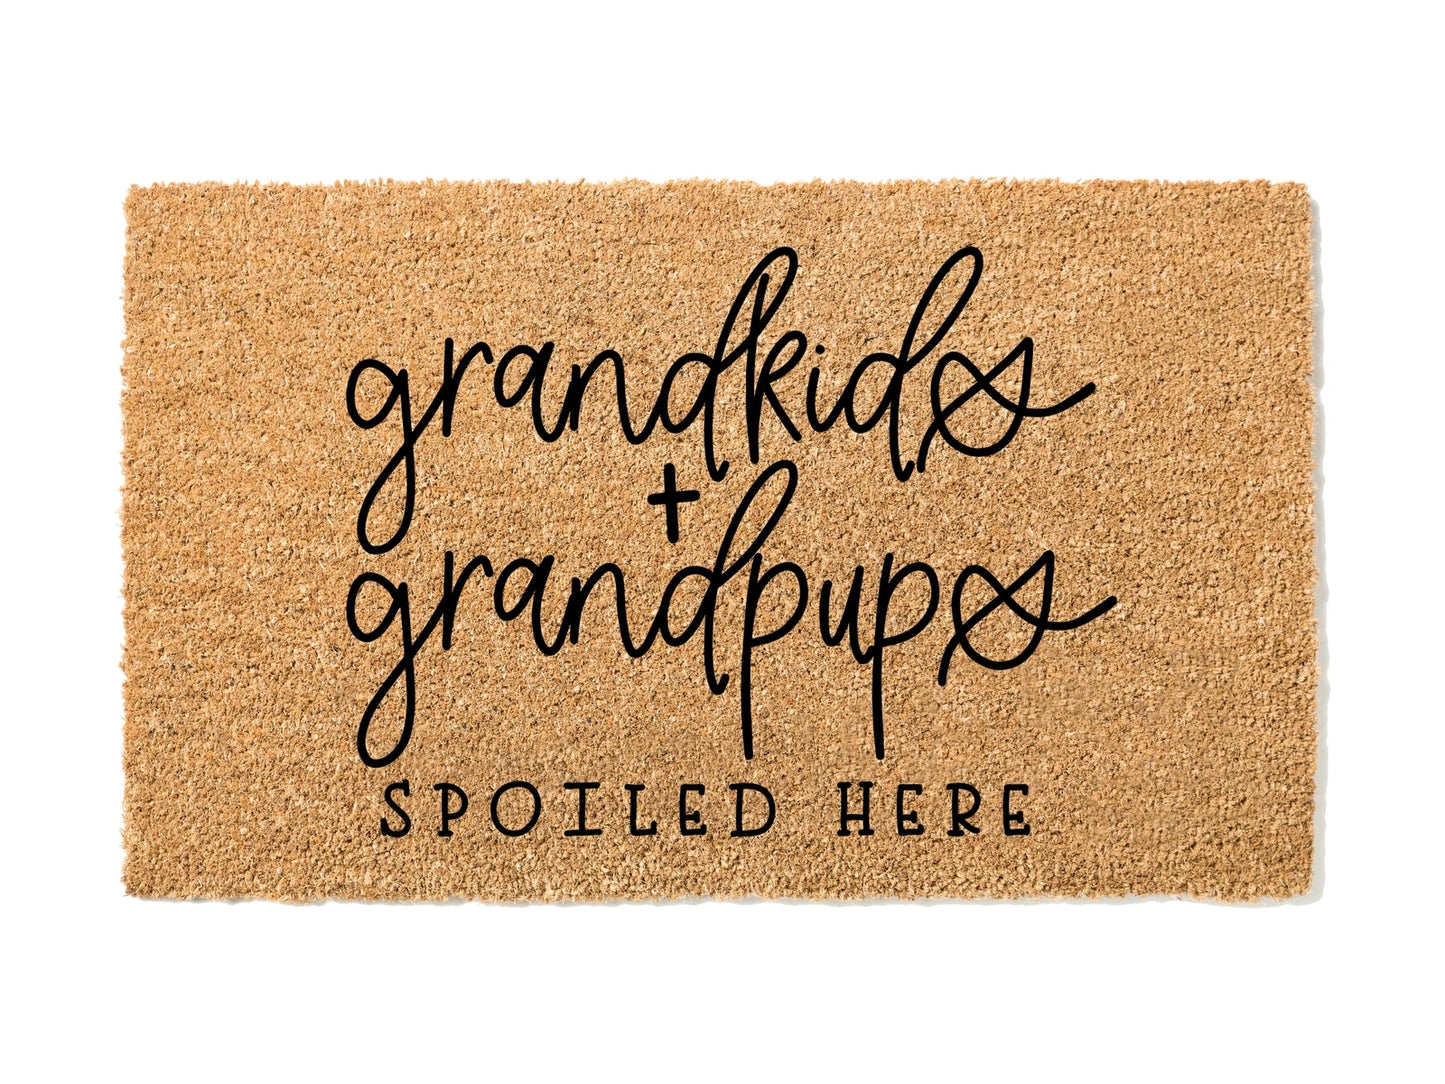 Grandkids and Grandpups Spoiled Here Doormat